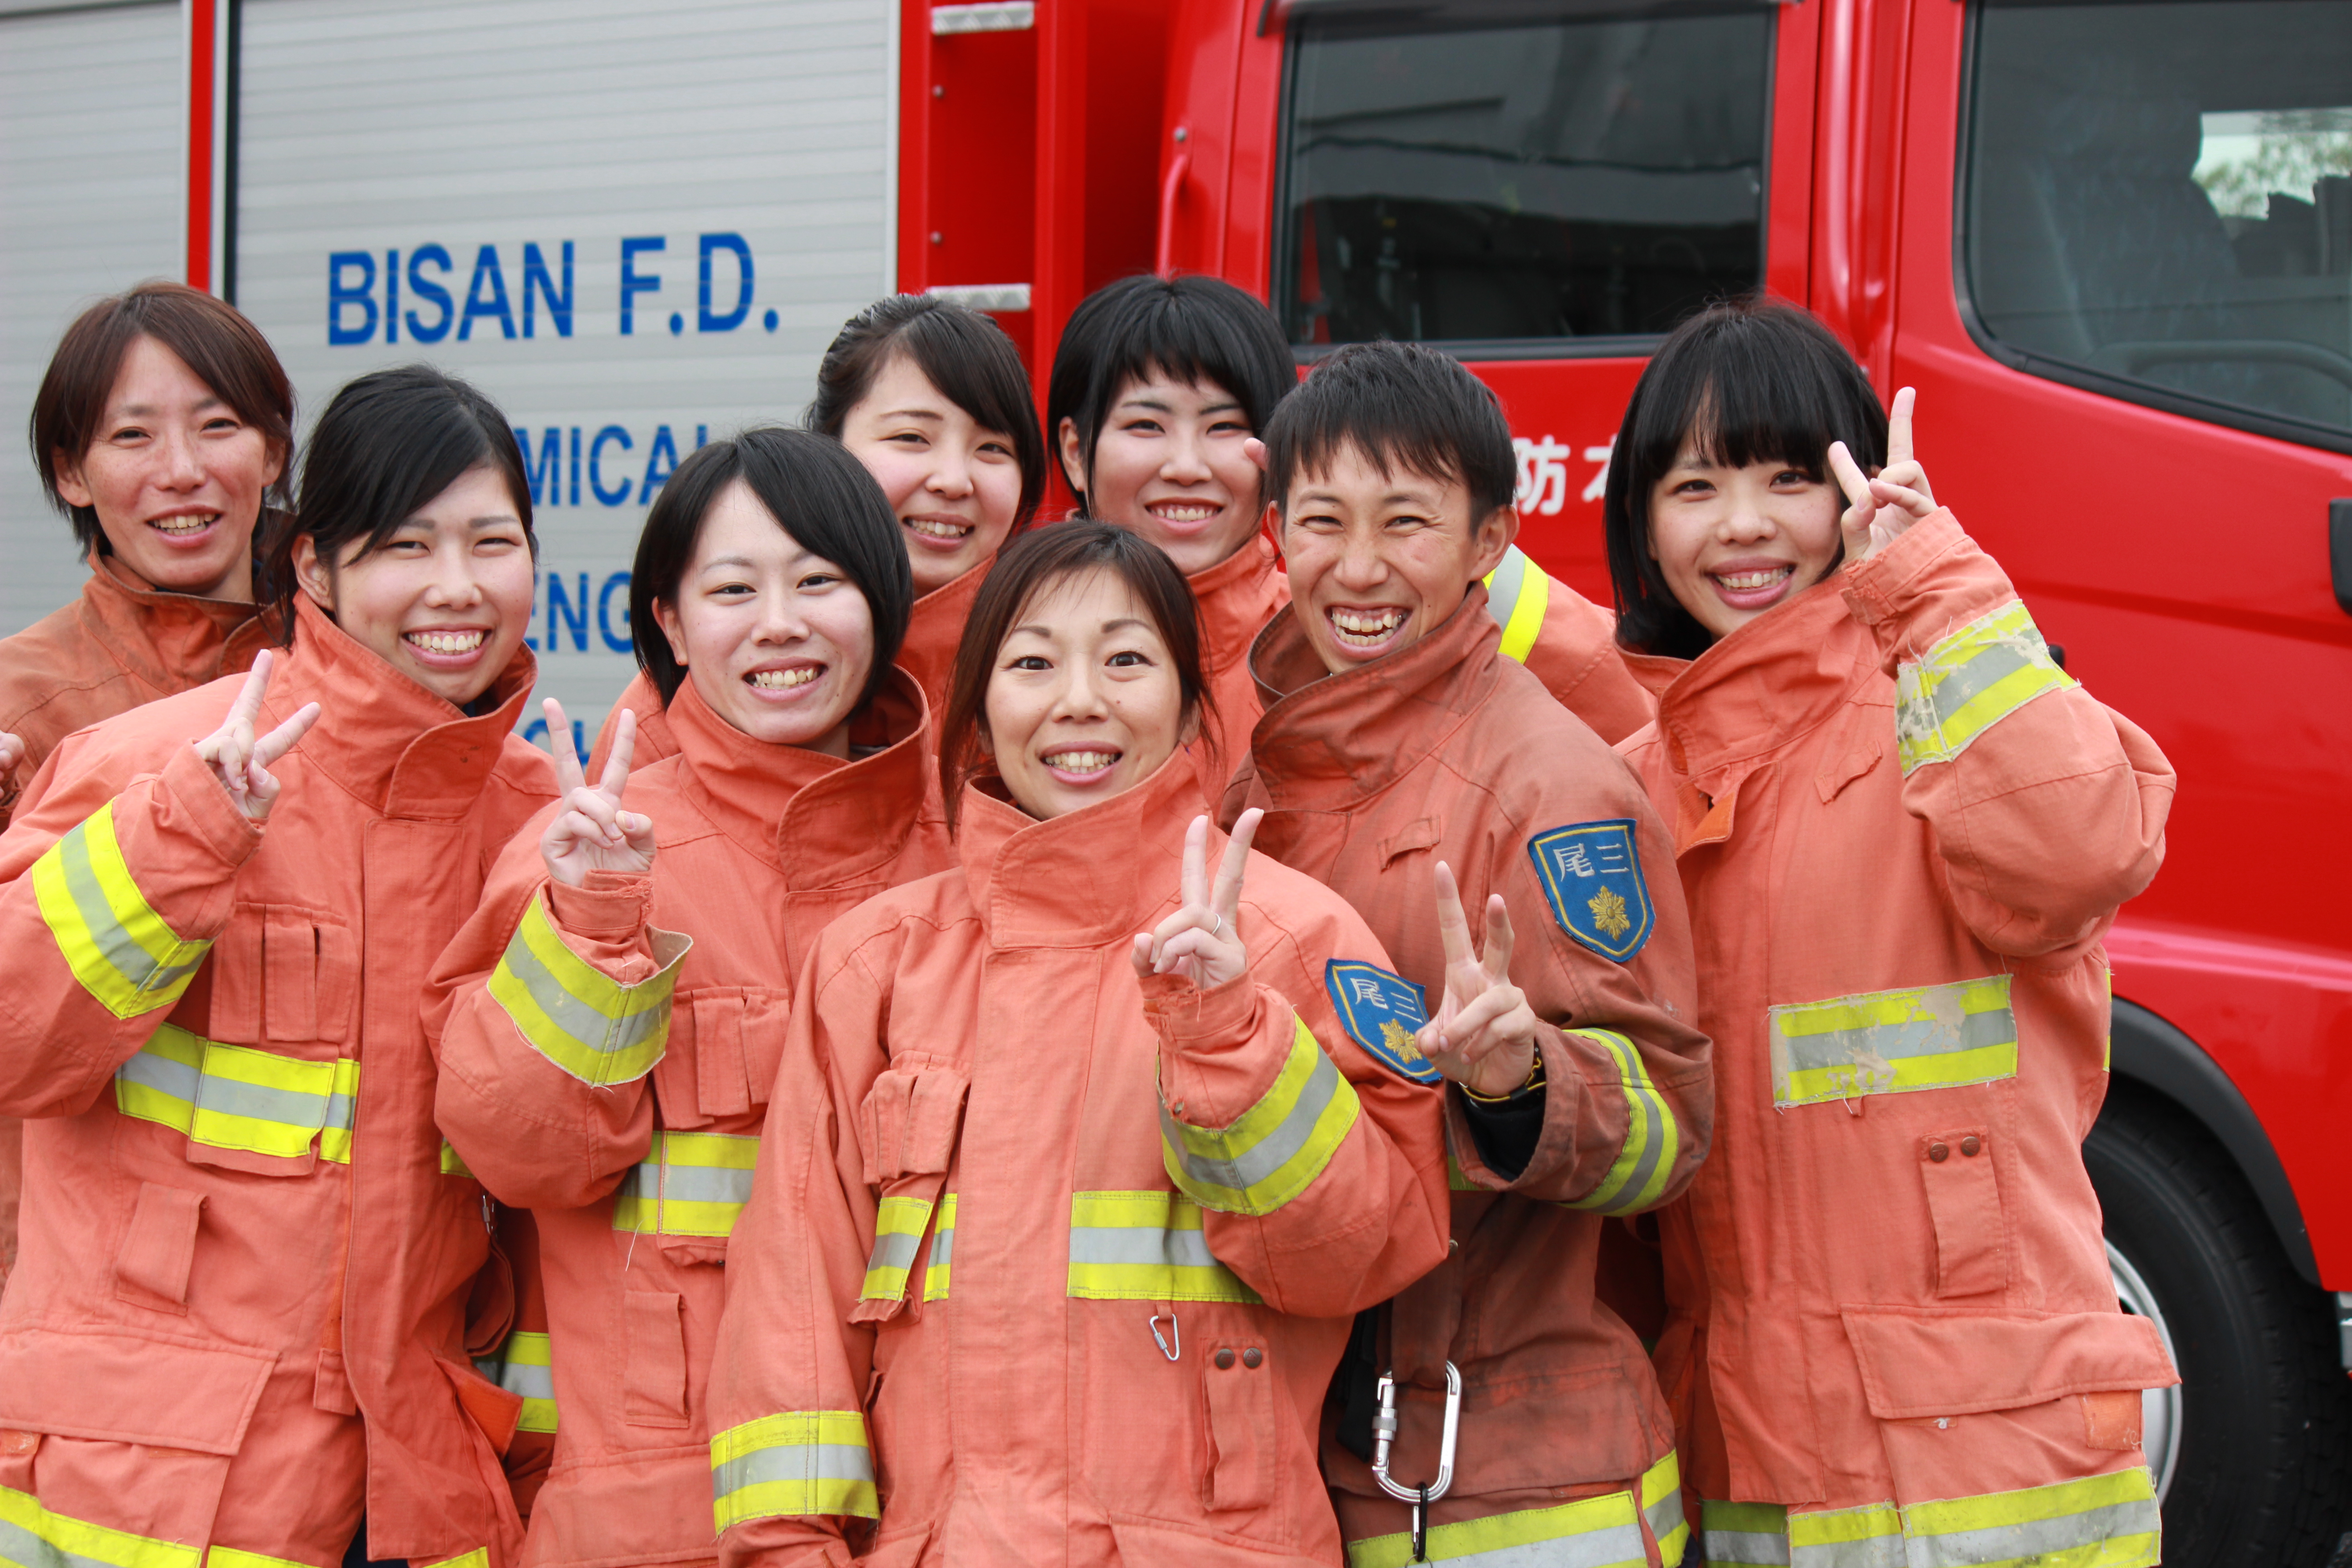 尾三消防本部は、女性が働きやすい職場環境です | 愛知県尾三消防組合